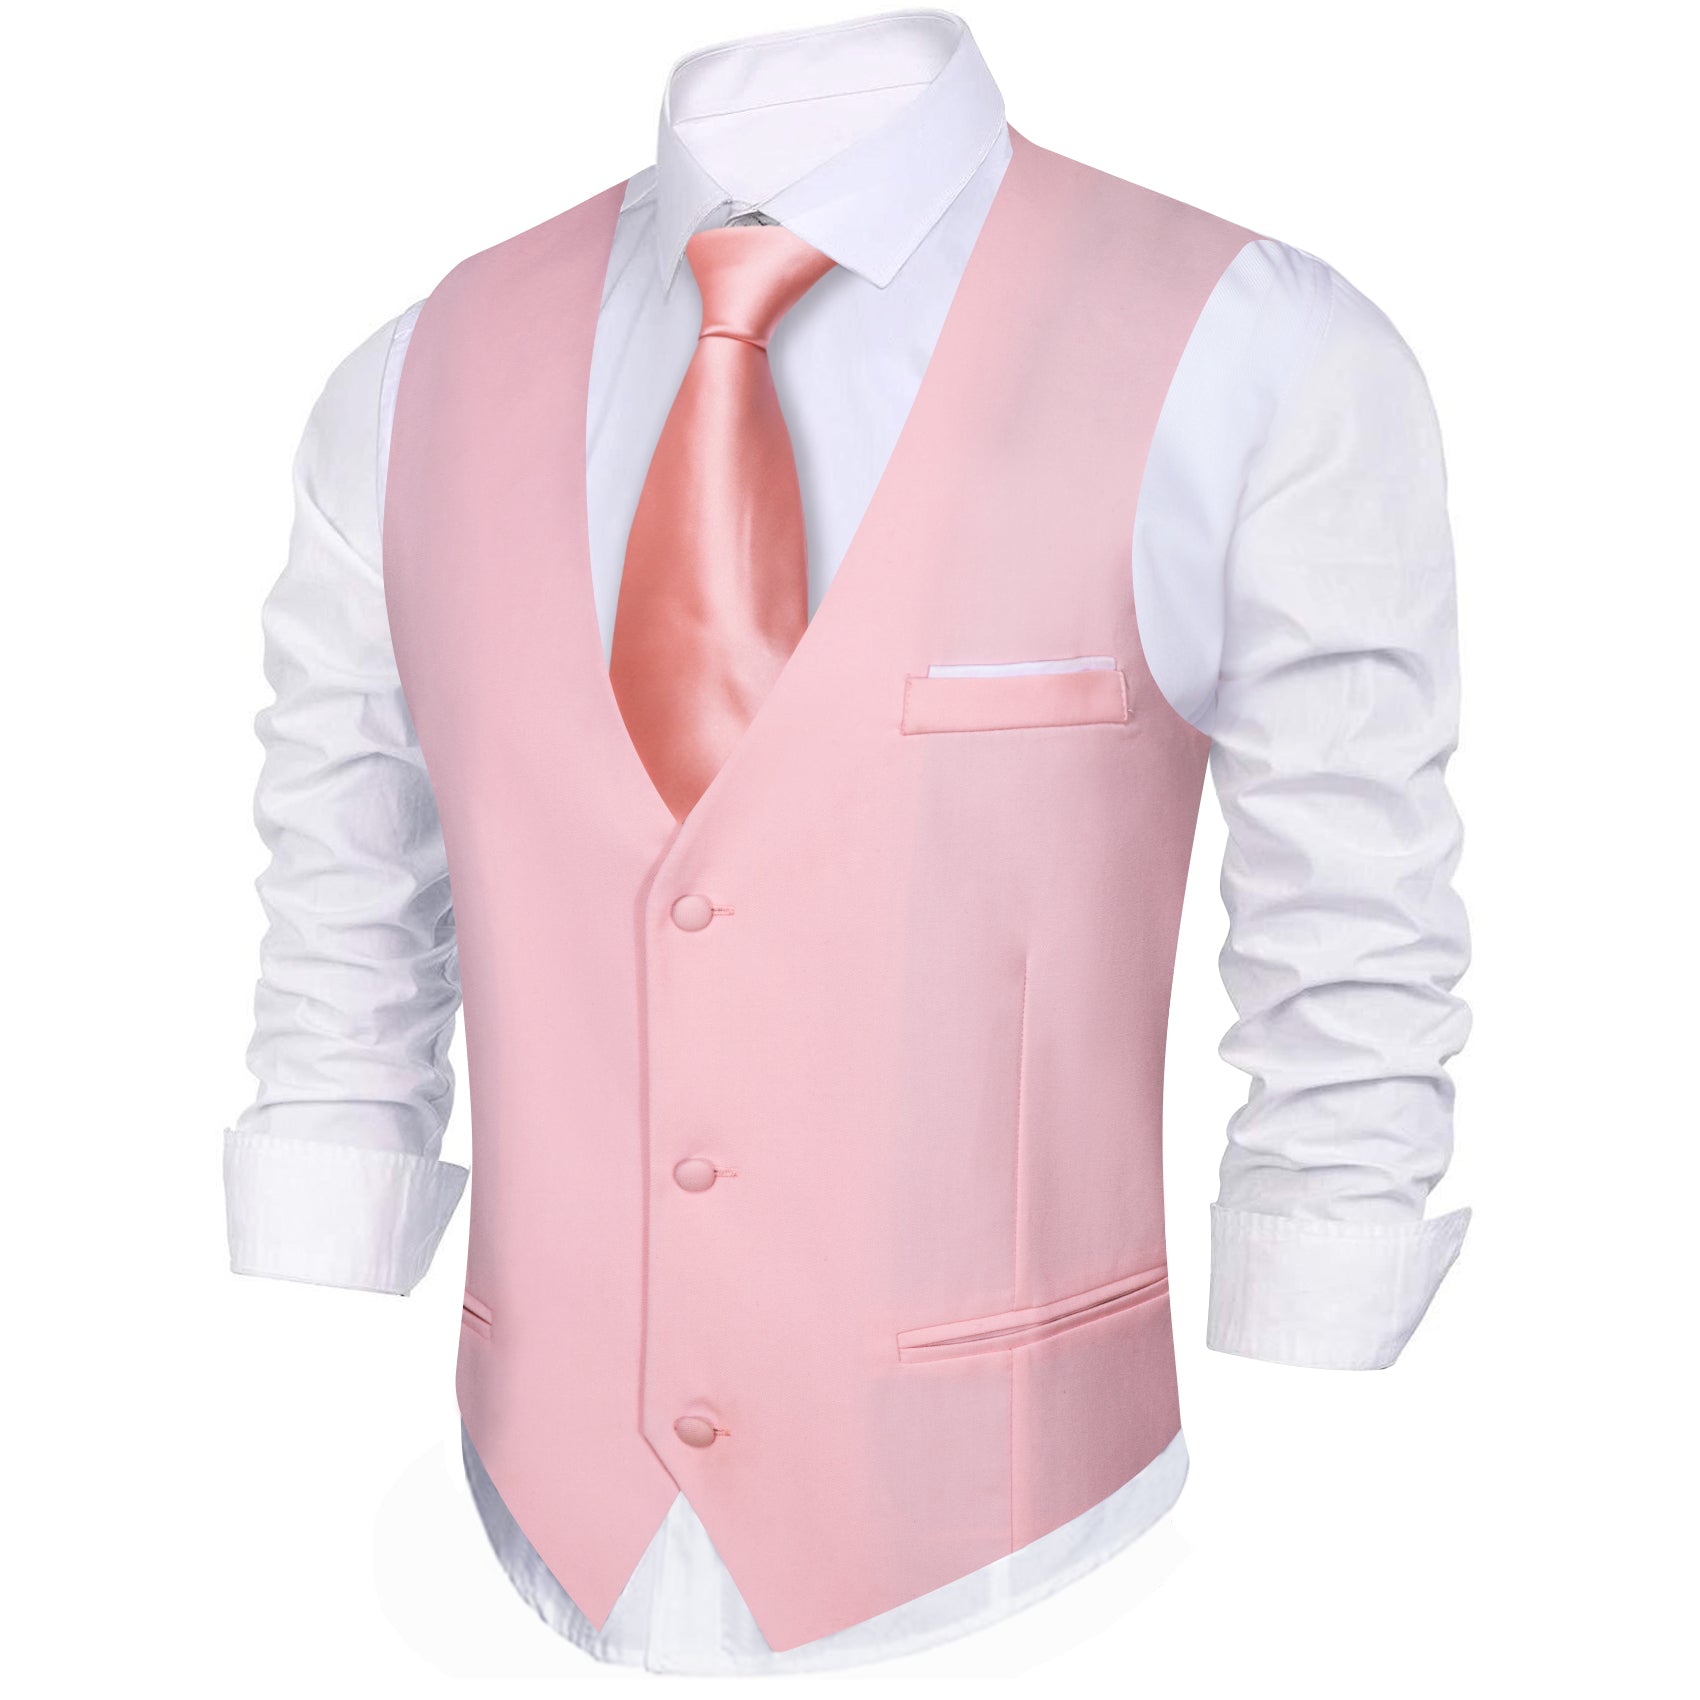 New Men's Pink Solid V-Neck Waistcoat Vest for Business